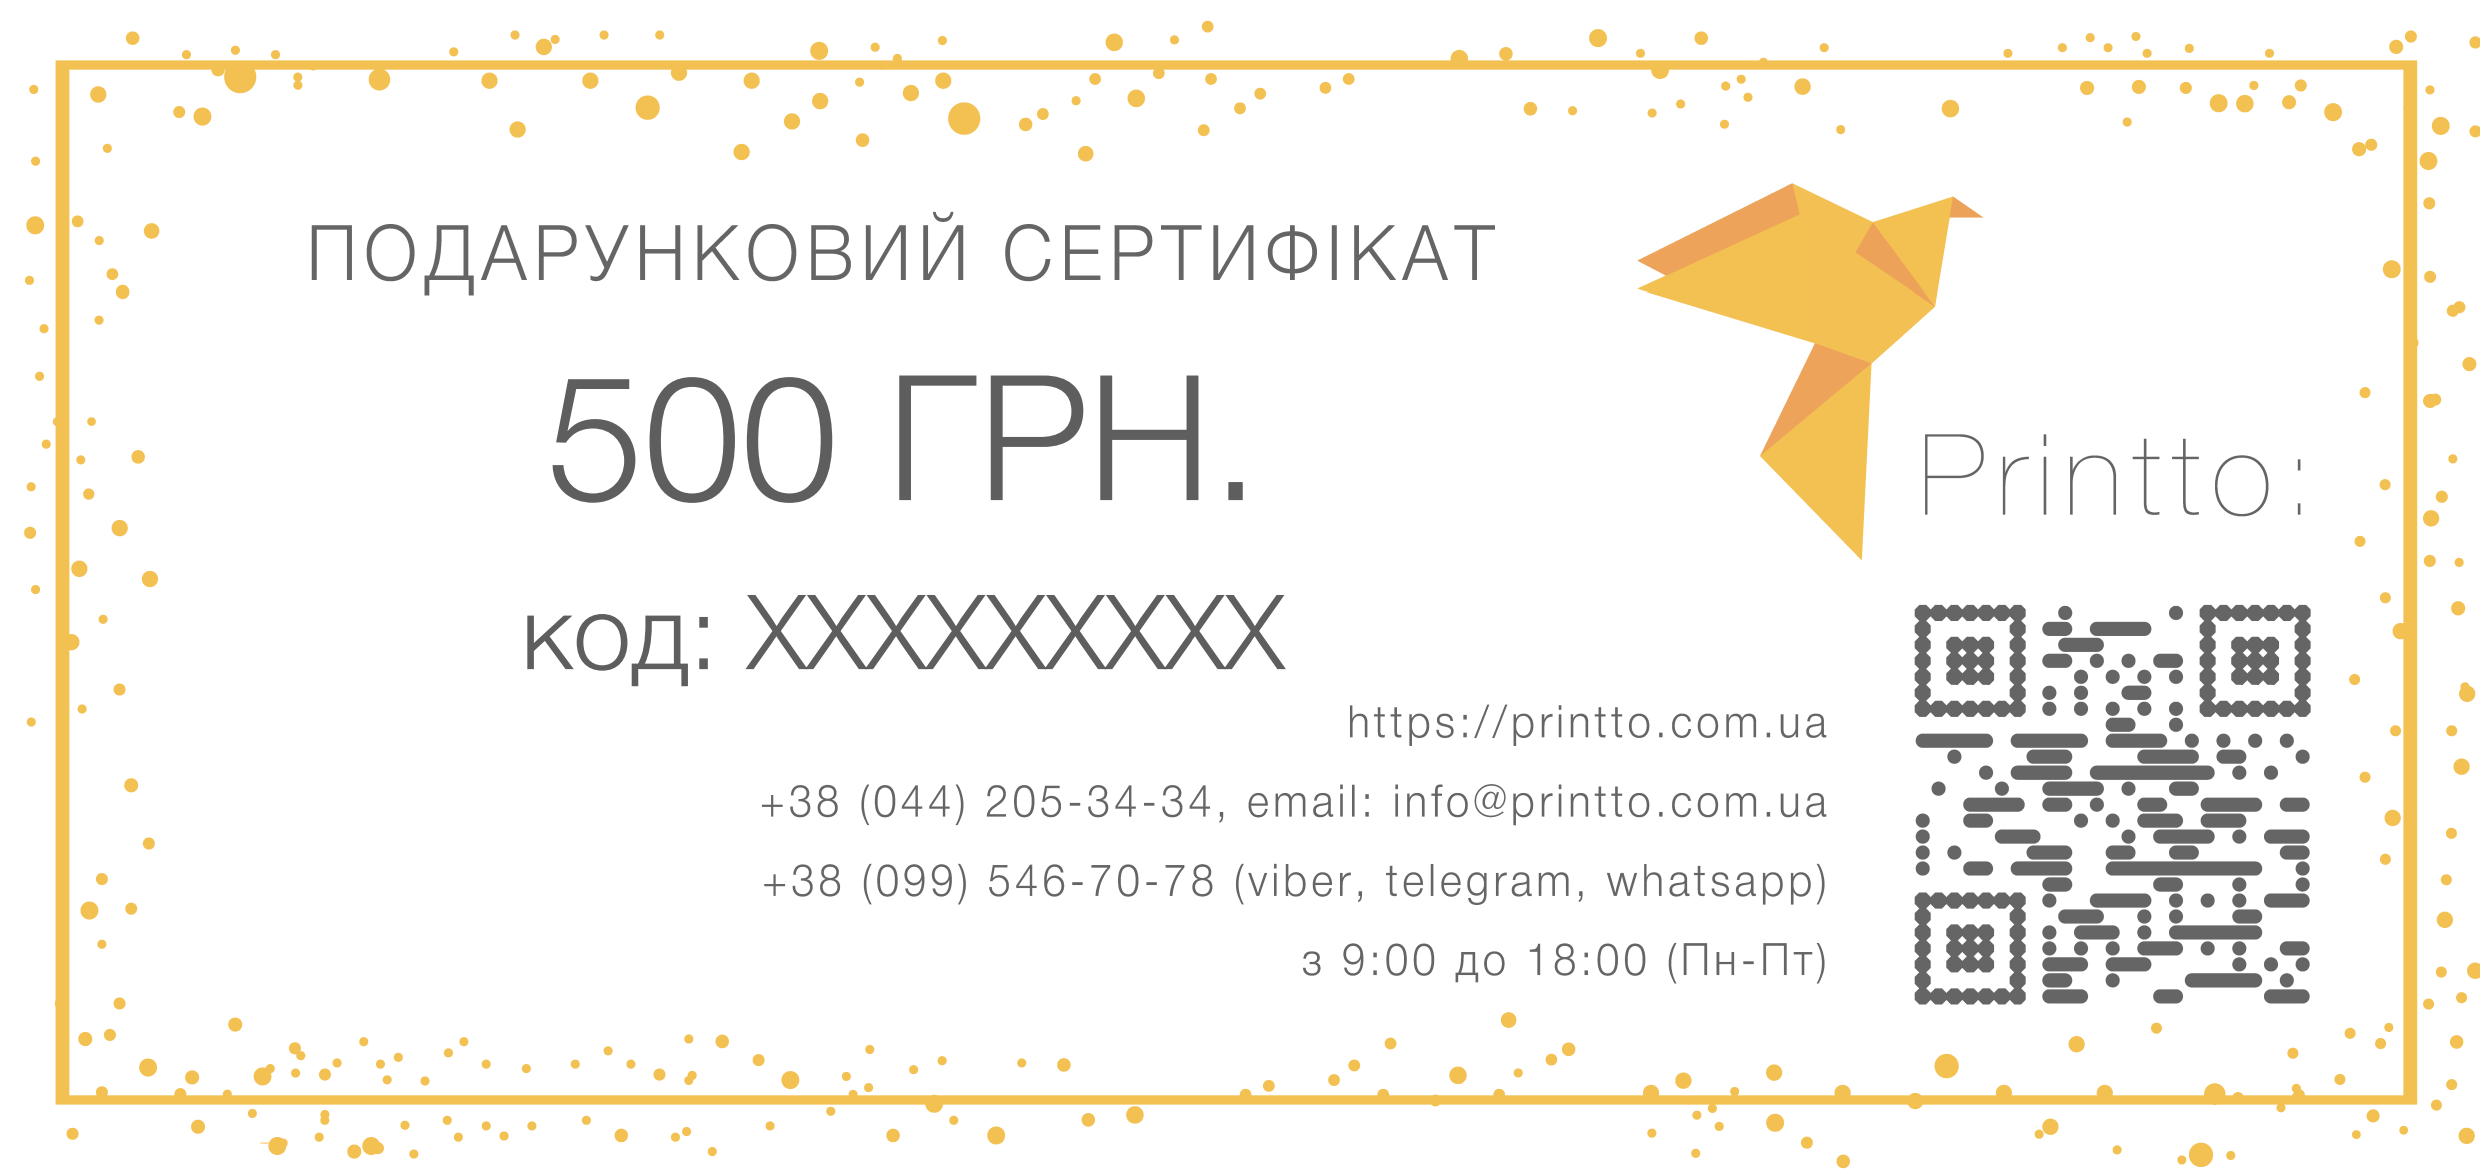 Подарунковий сертифікат на 500 грн. | PrintTo: